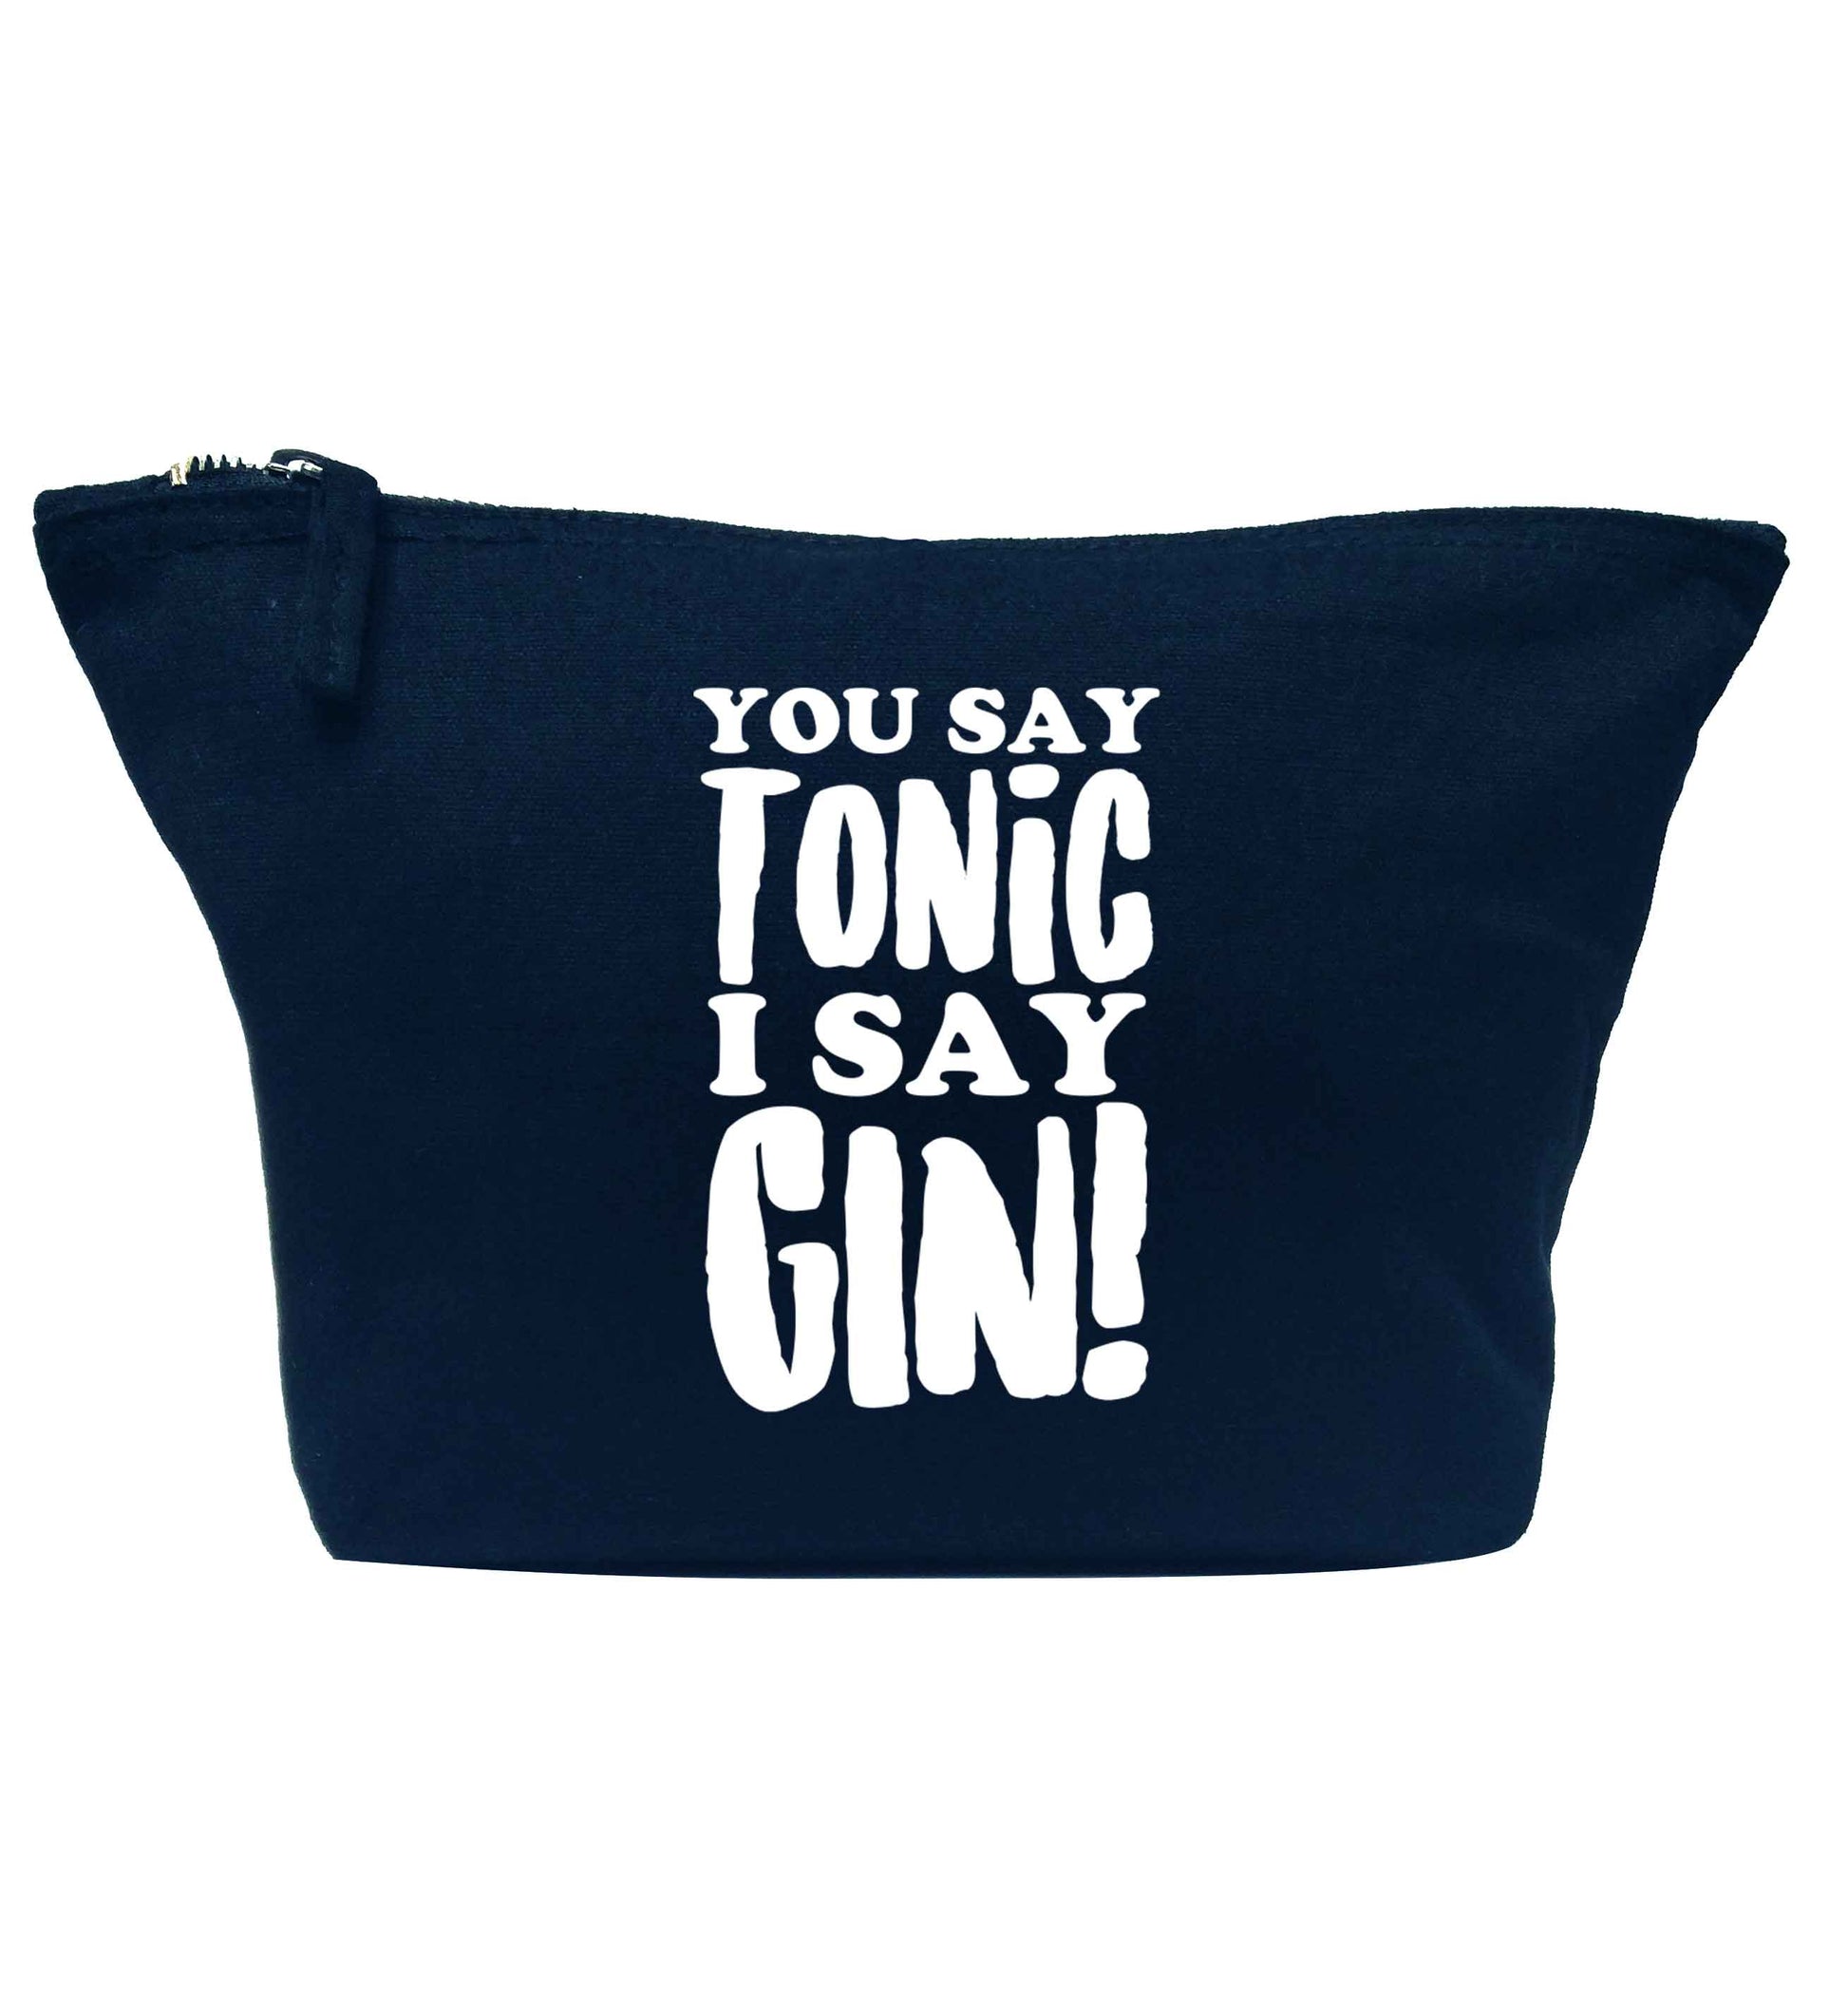 You say tonic I say gin navy makeup bag